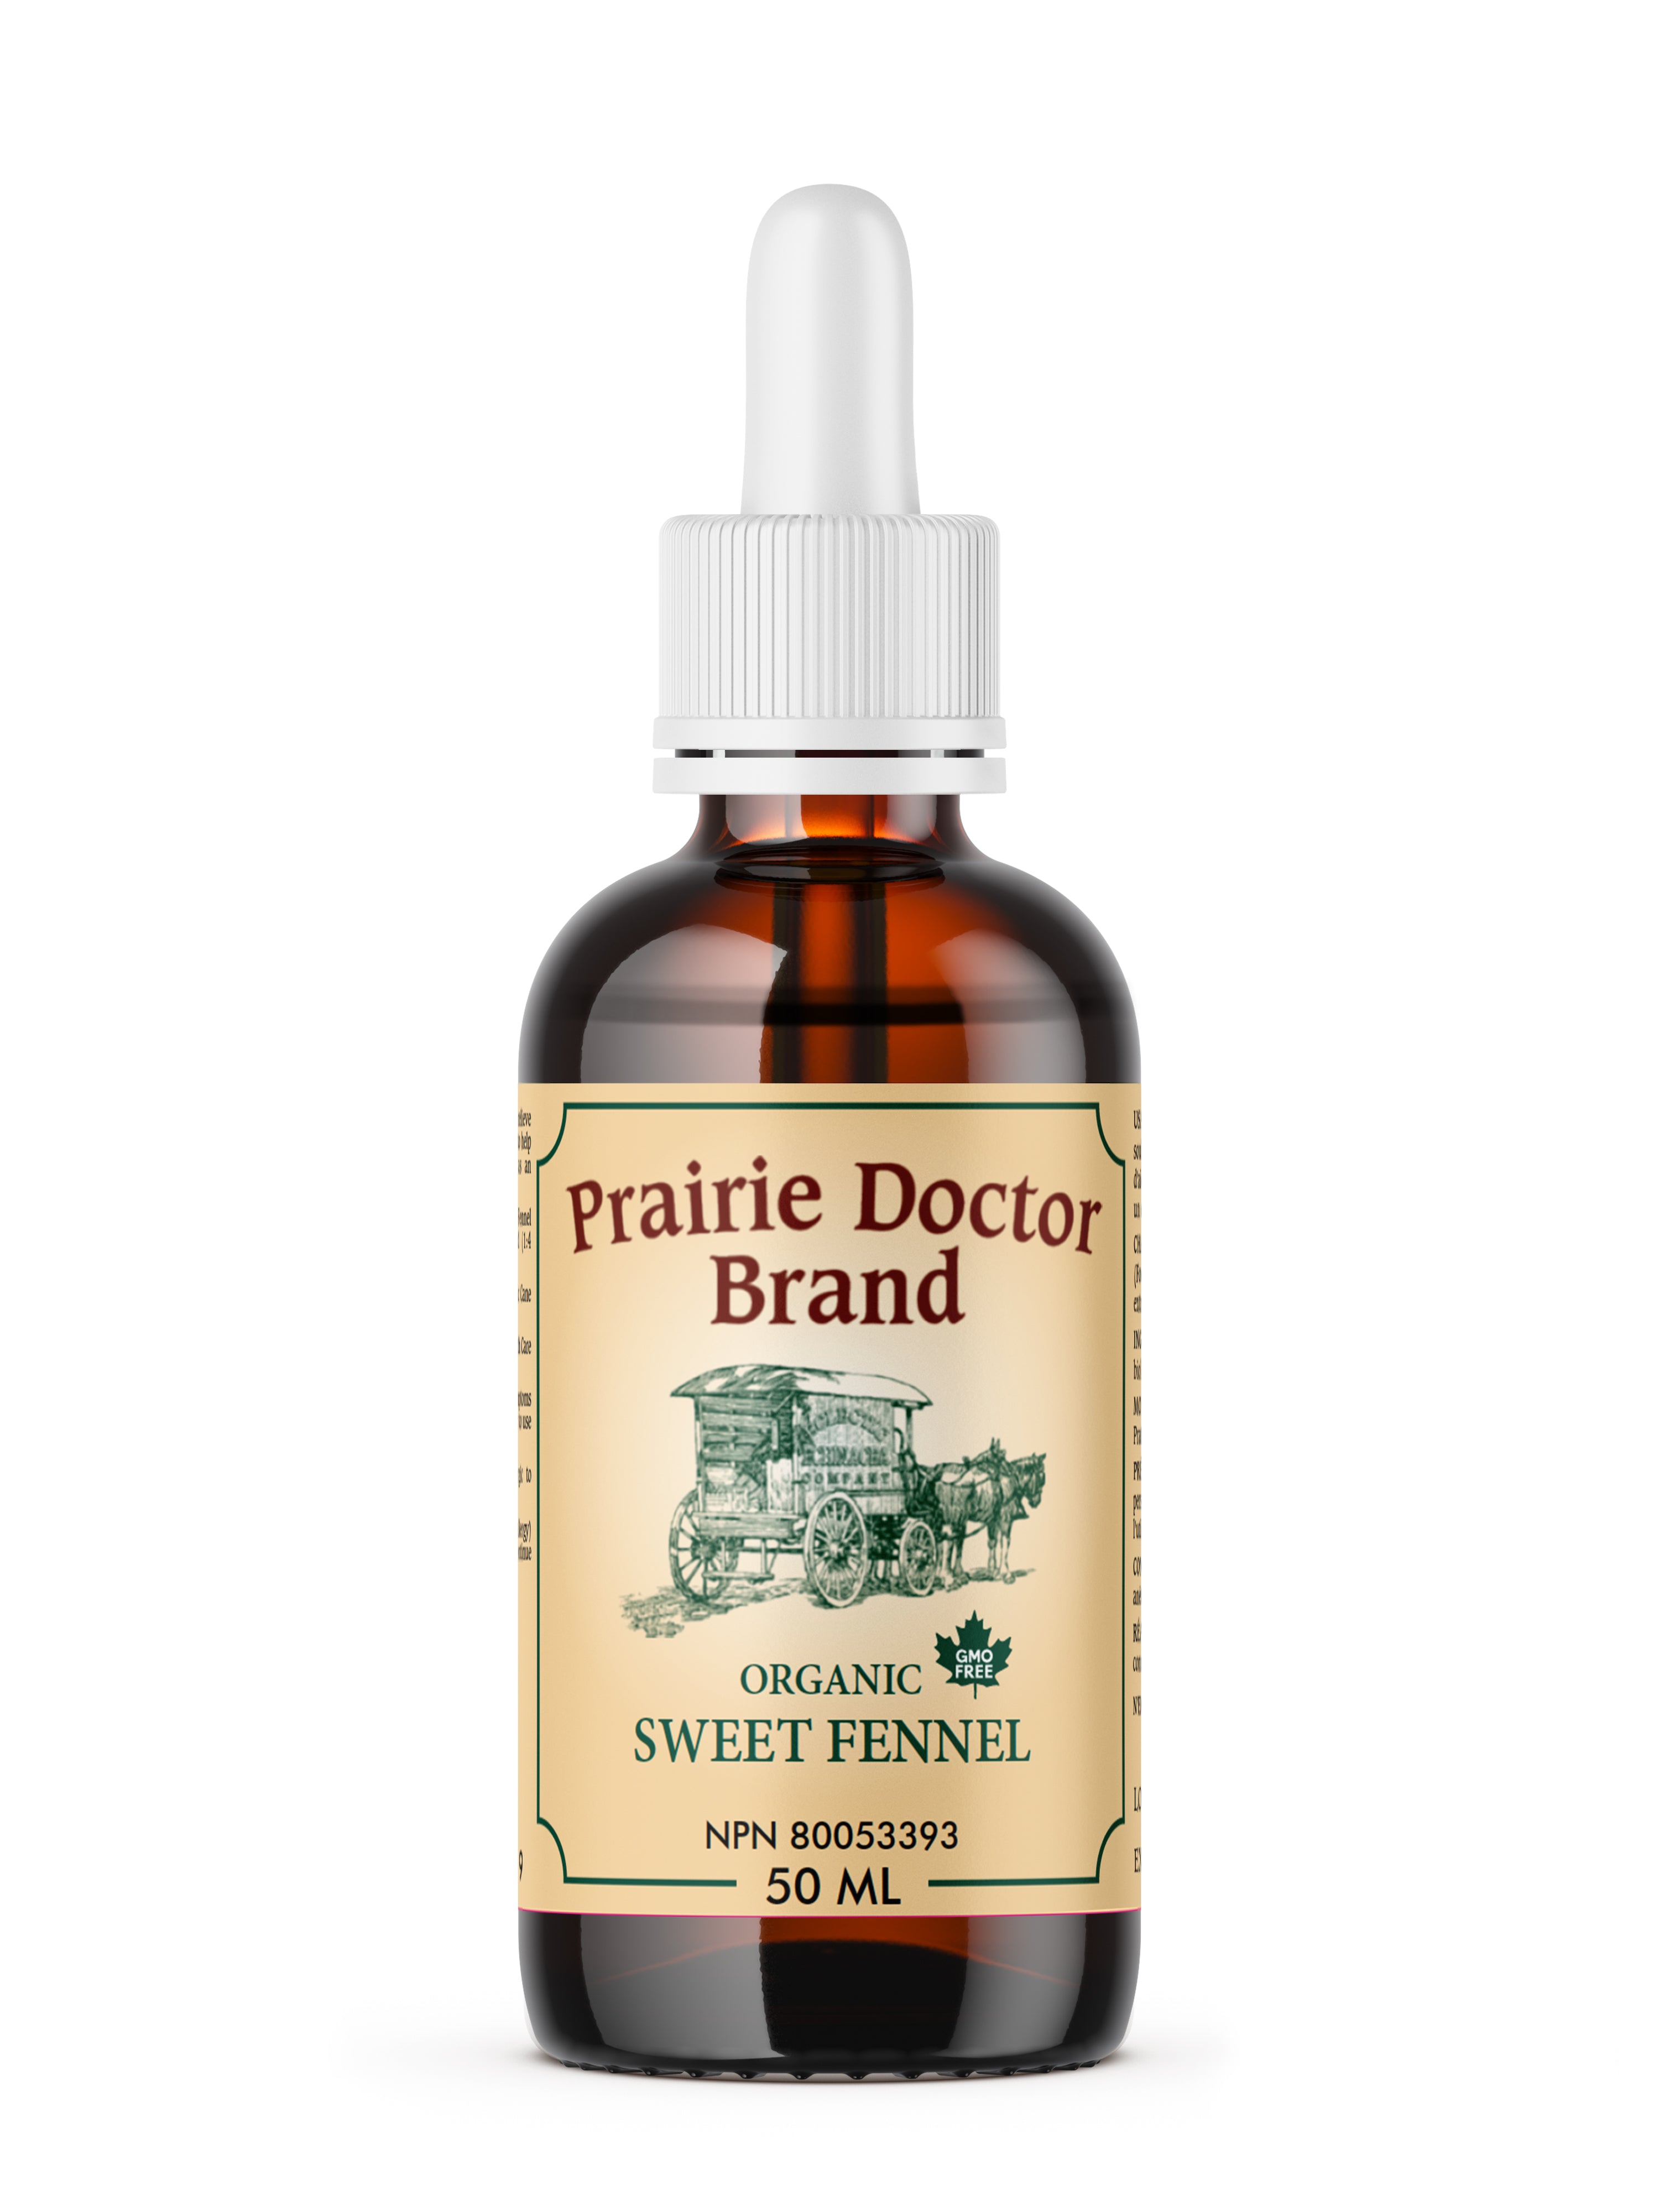 Prairie Doctor Sweet Fennel (50ml) - Lifestyle Markets